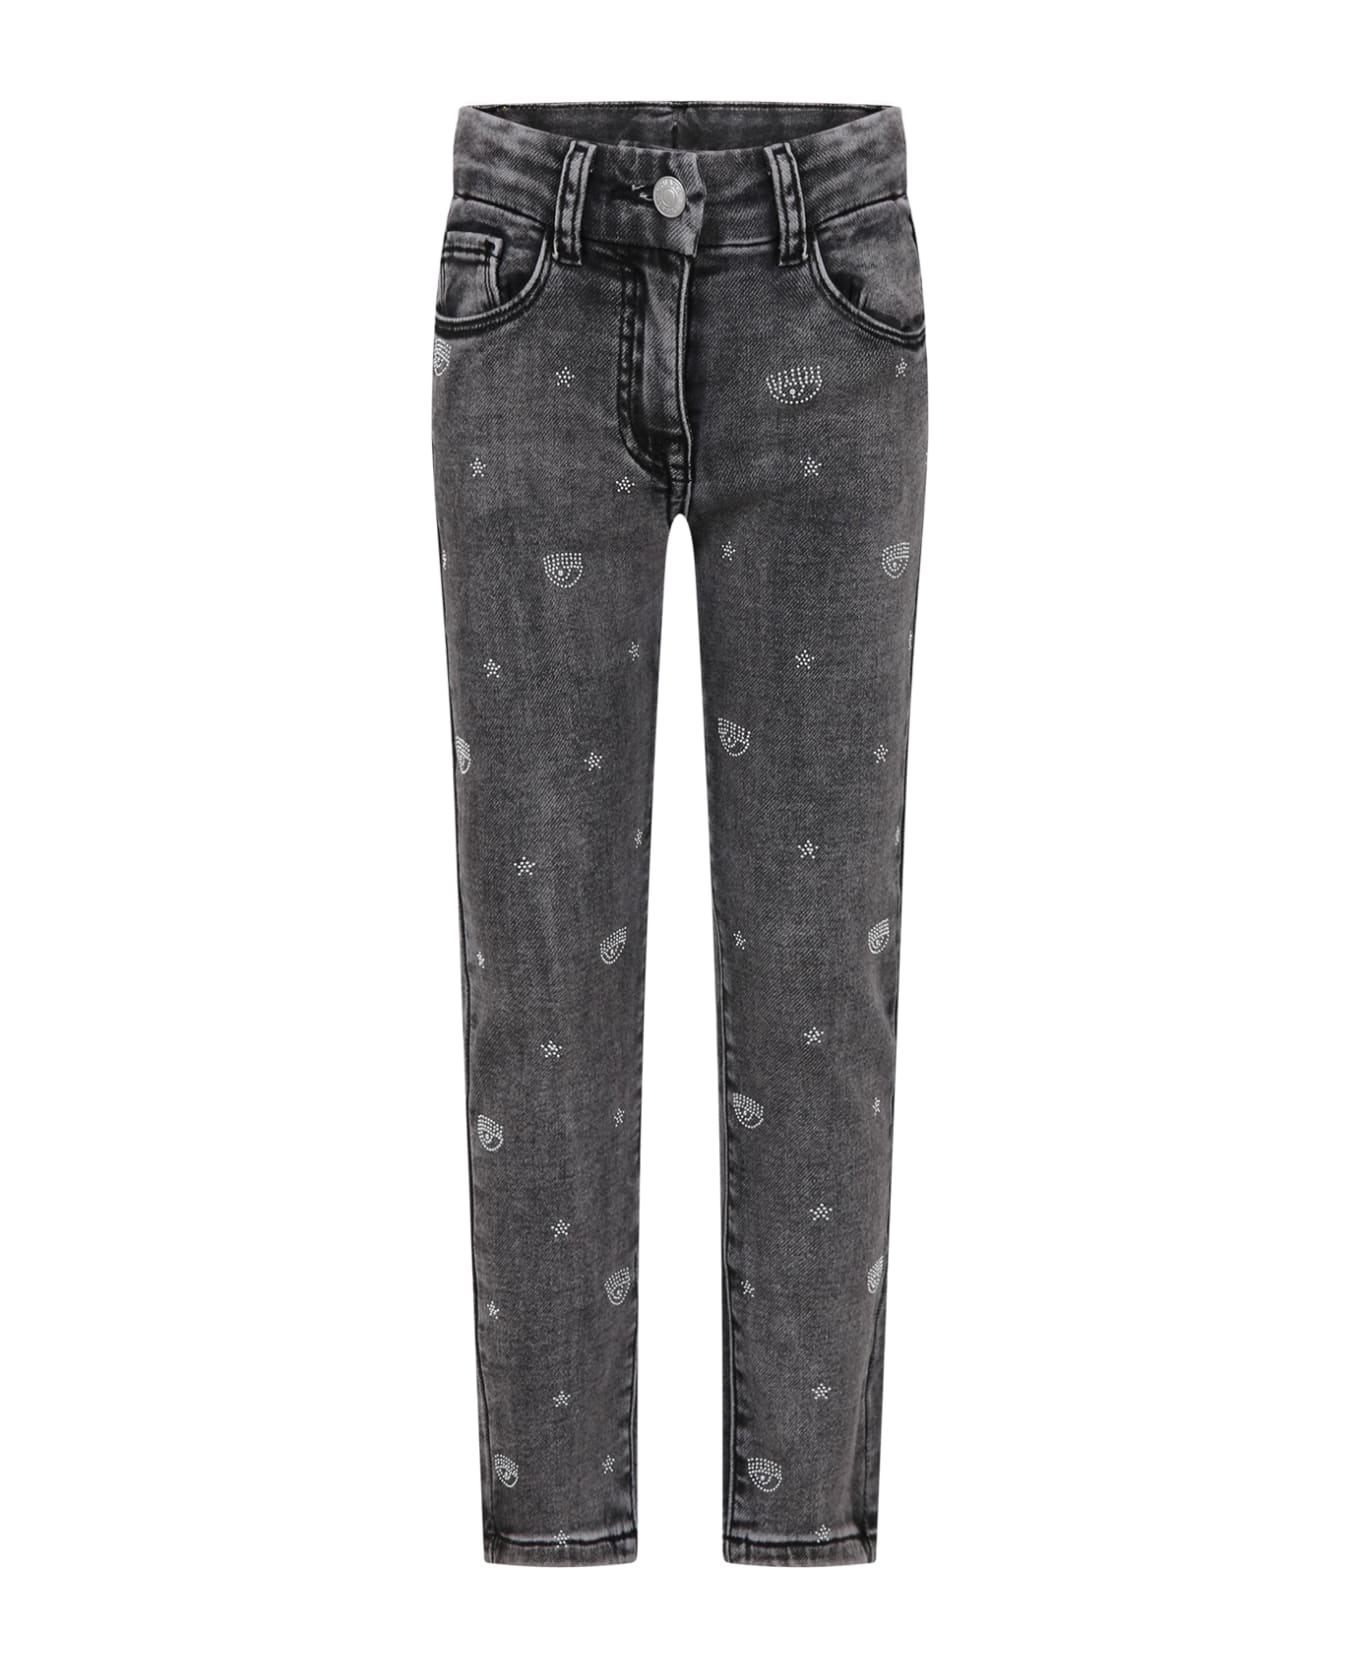 Chiara Ferragni Black Jeans For Girl With Eyestar - Black